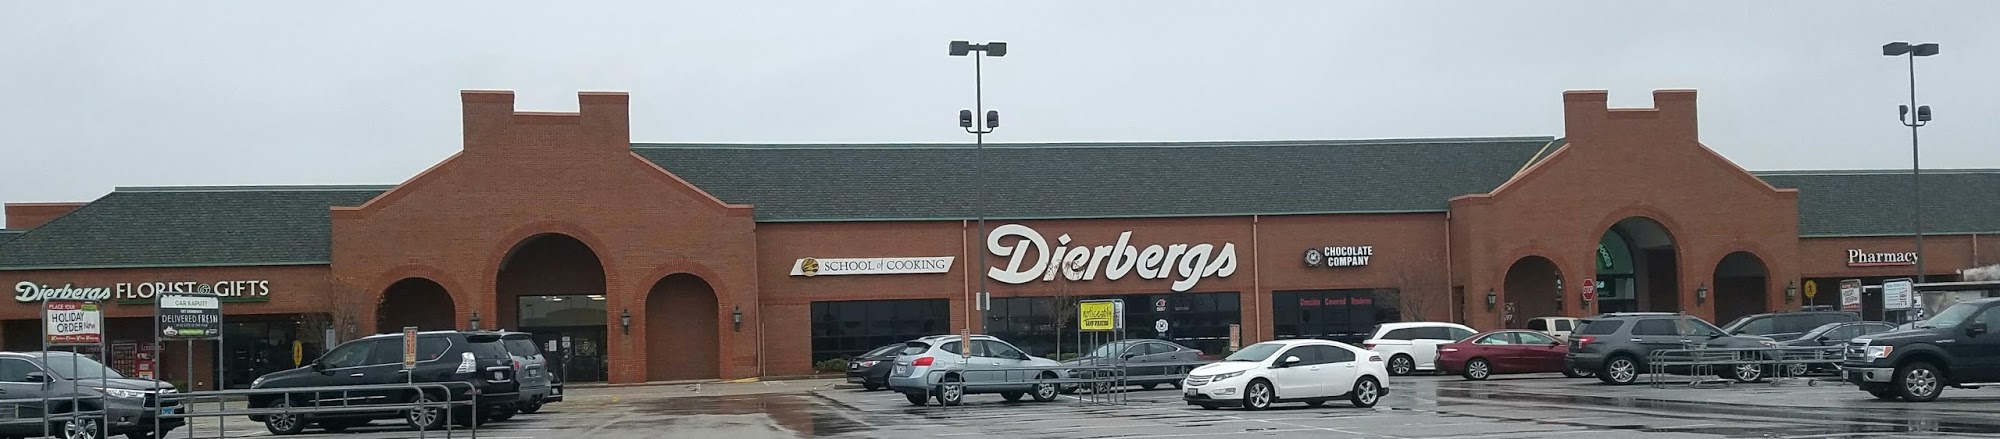 Dierbergs Markets - Edwardsville Crossing